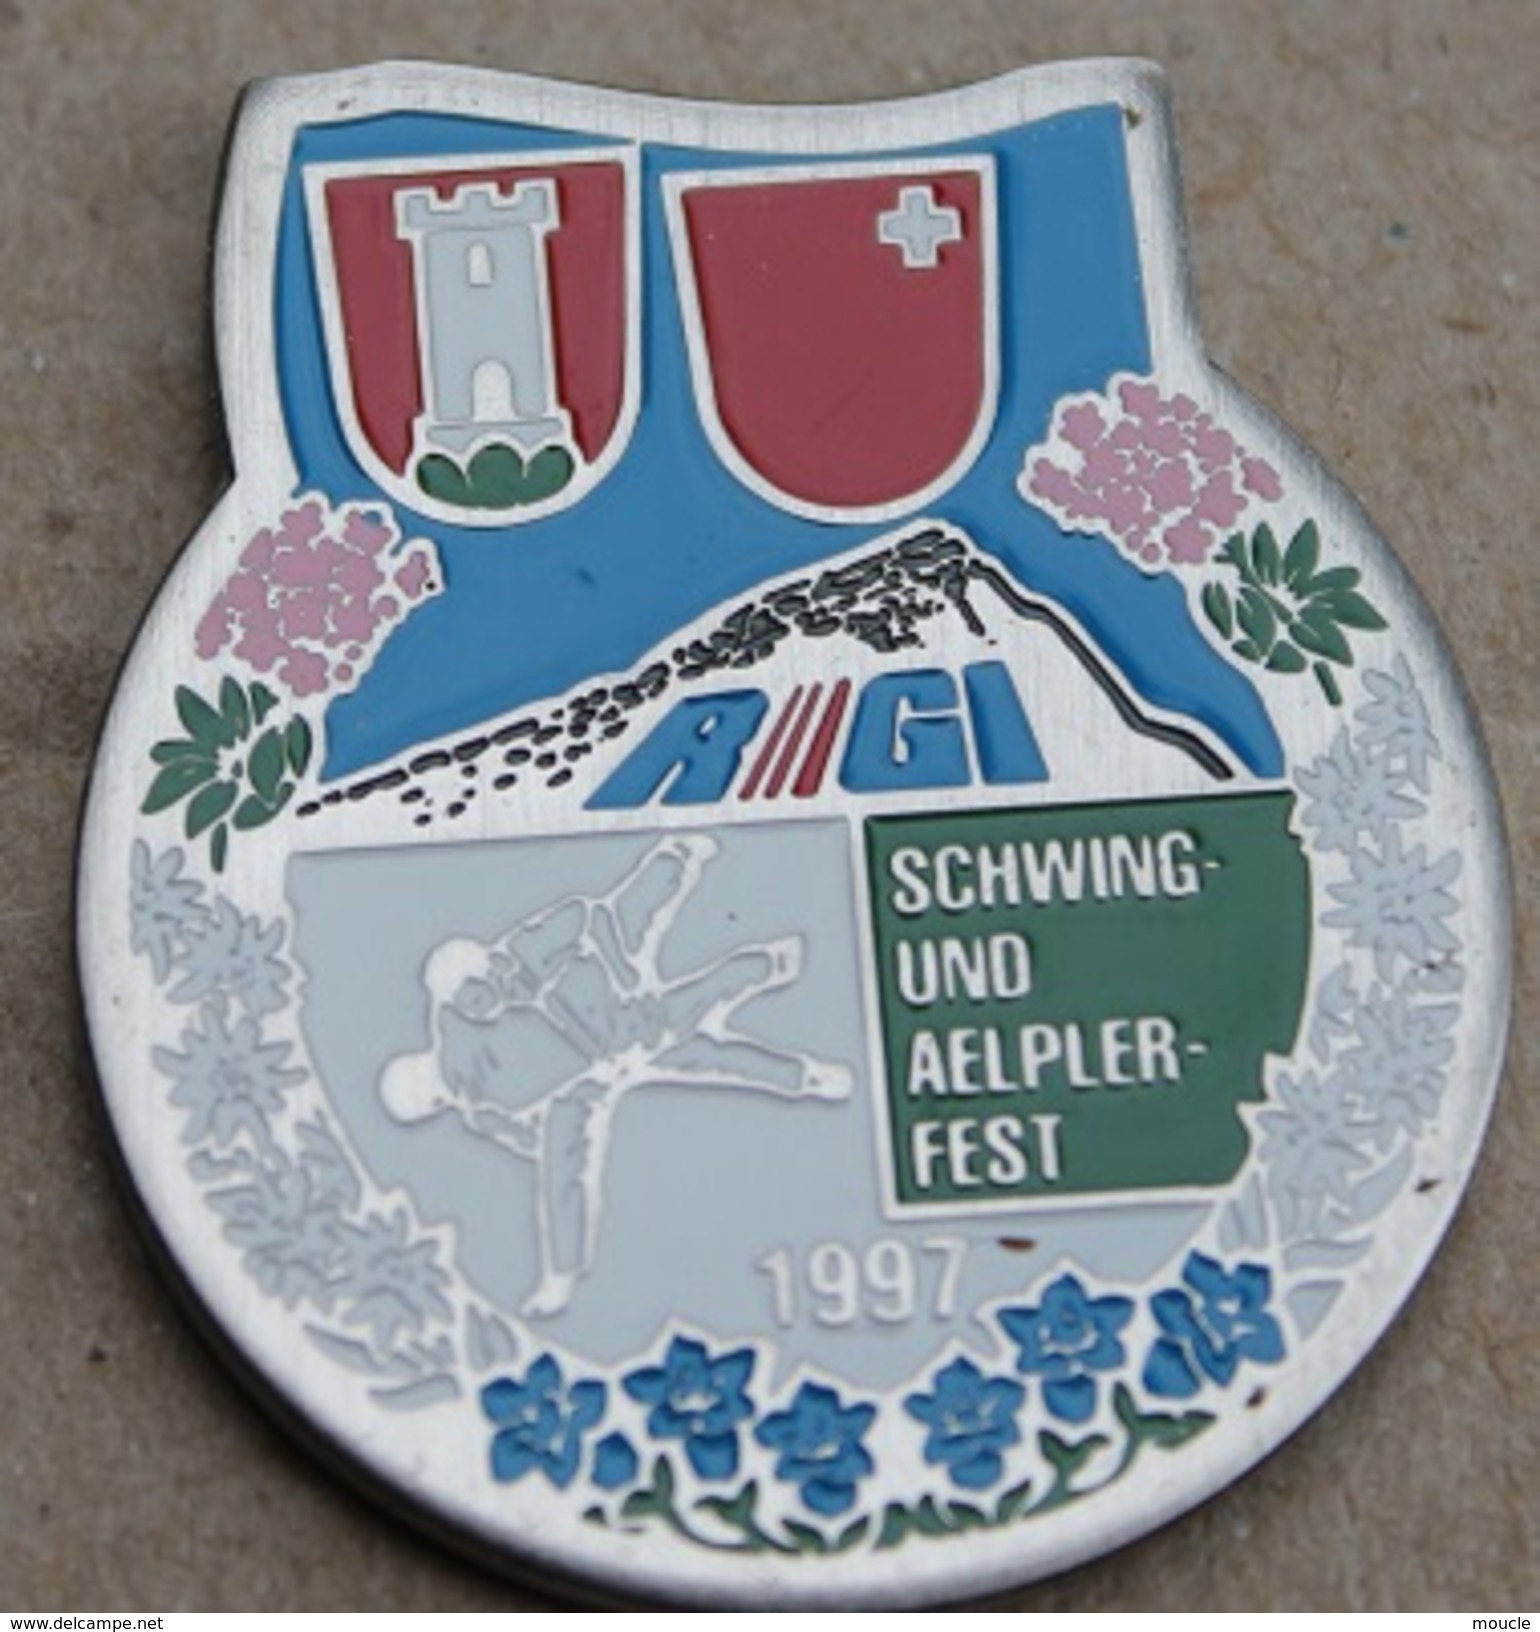 LUTTE SUISSE - SCHWING UND AELPLERFEST 1997 - SUISSE - SCHWEIZ - SWIZTERLAND - RIGI - DRAPEAU CANTON DE SCHWYZ -    (14) - Worstelen